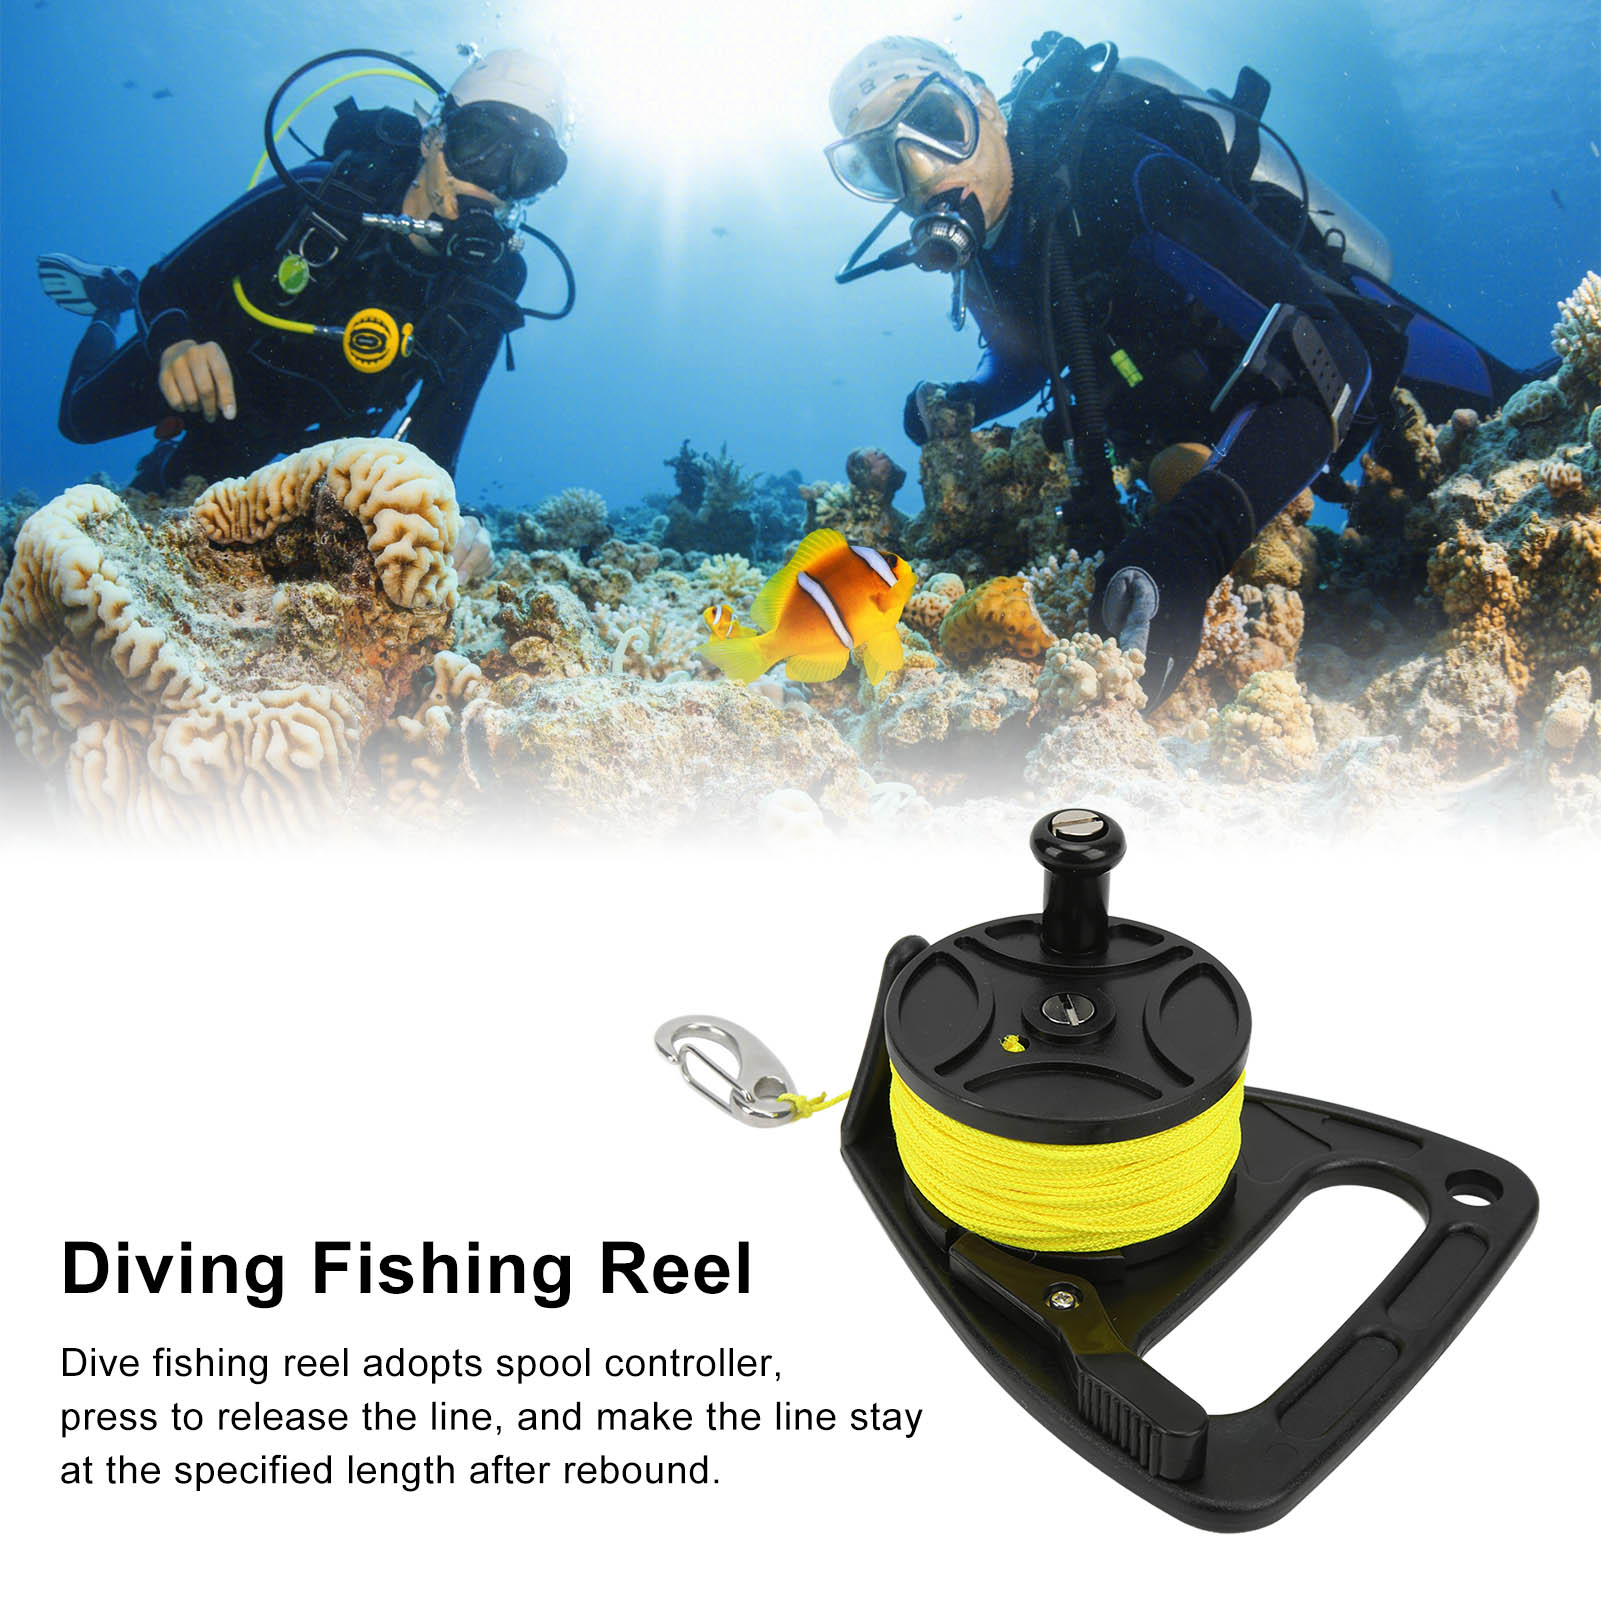 ดำน้ำตกปลา 】Reel Scuba Diving Reel Thumb Stopper Hook สำหรับดำน้ำ